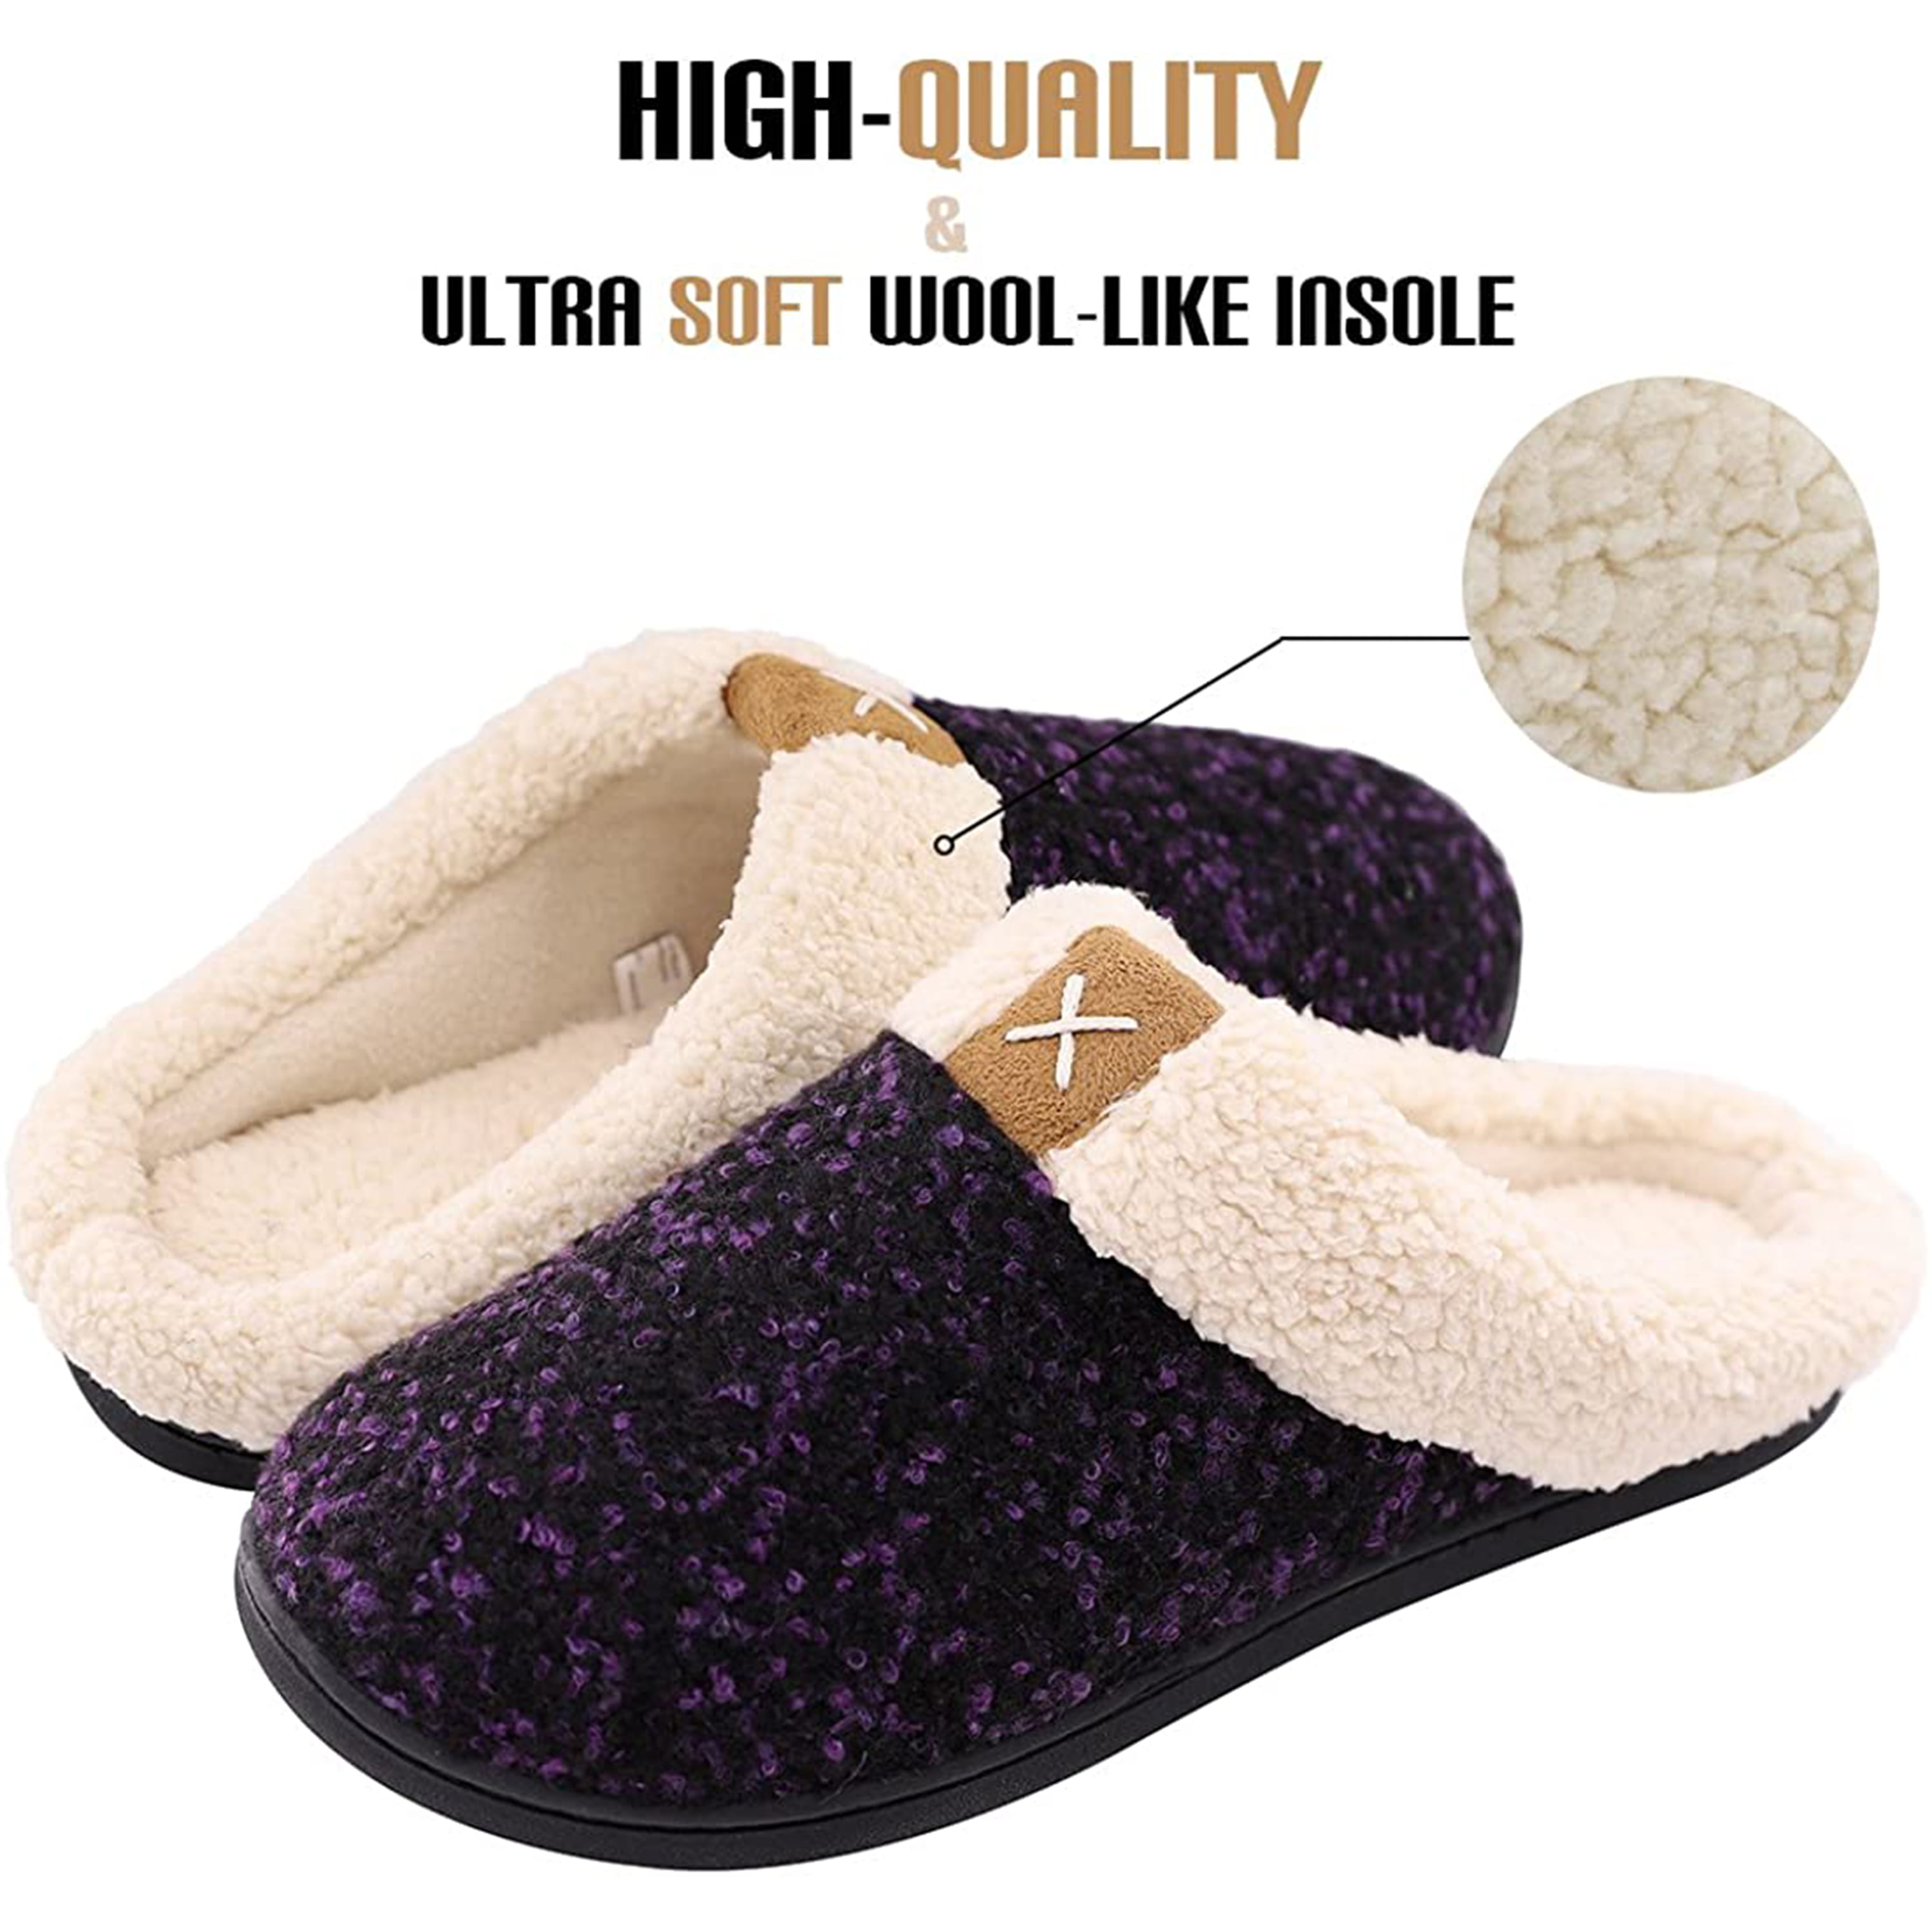 ultraideas women's cozy memory foam slippers